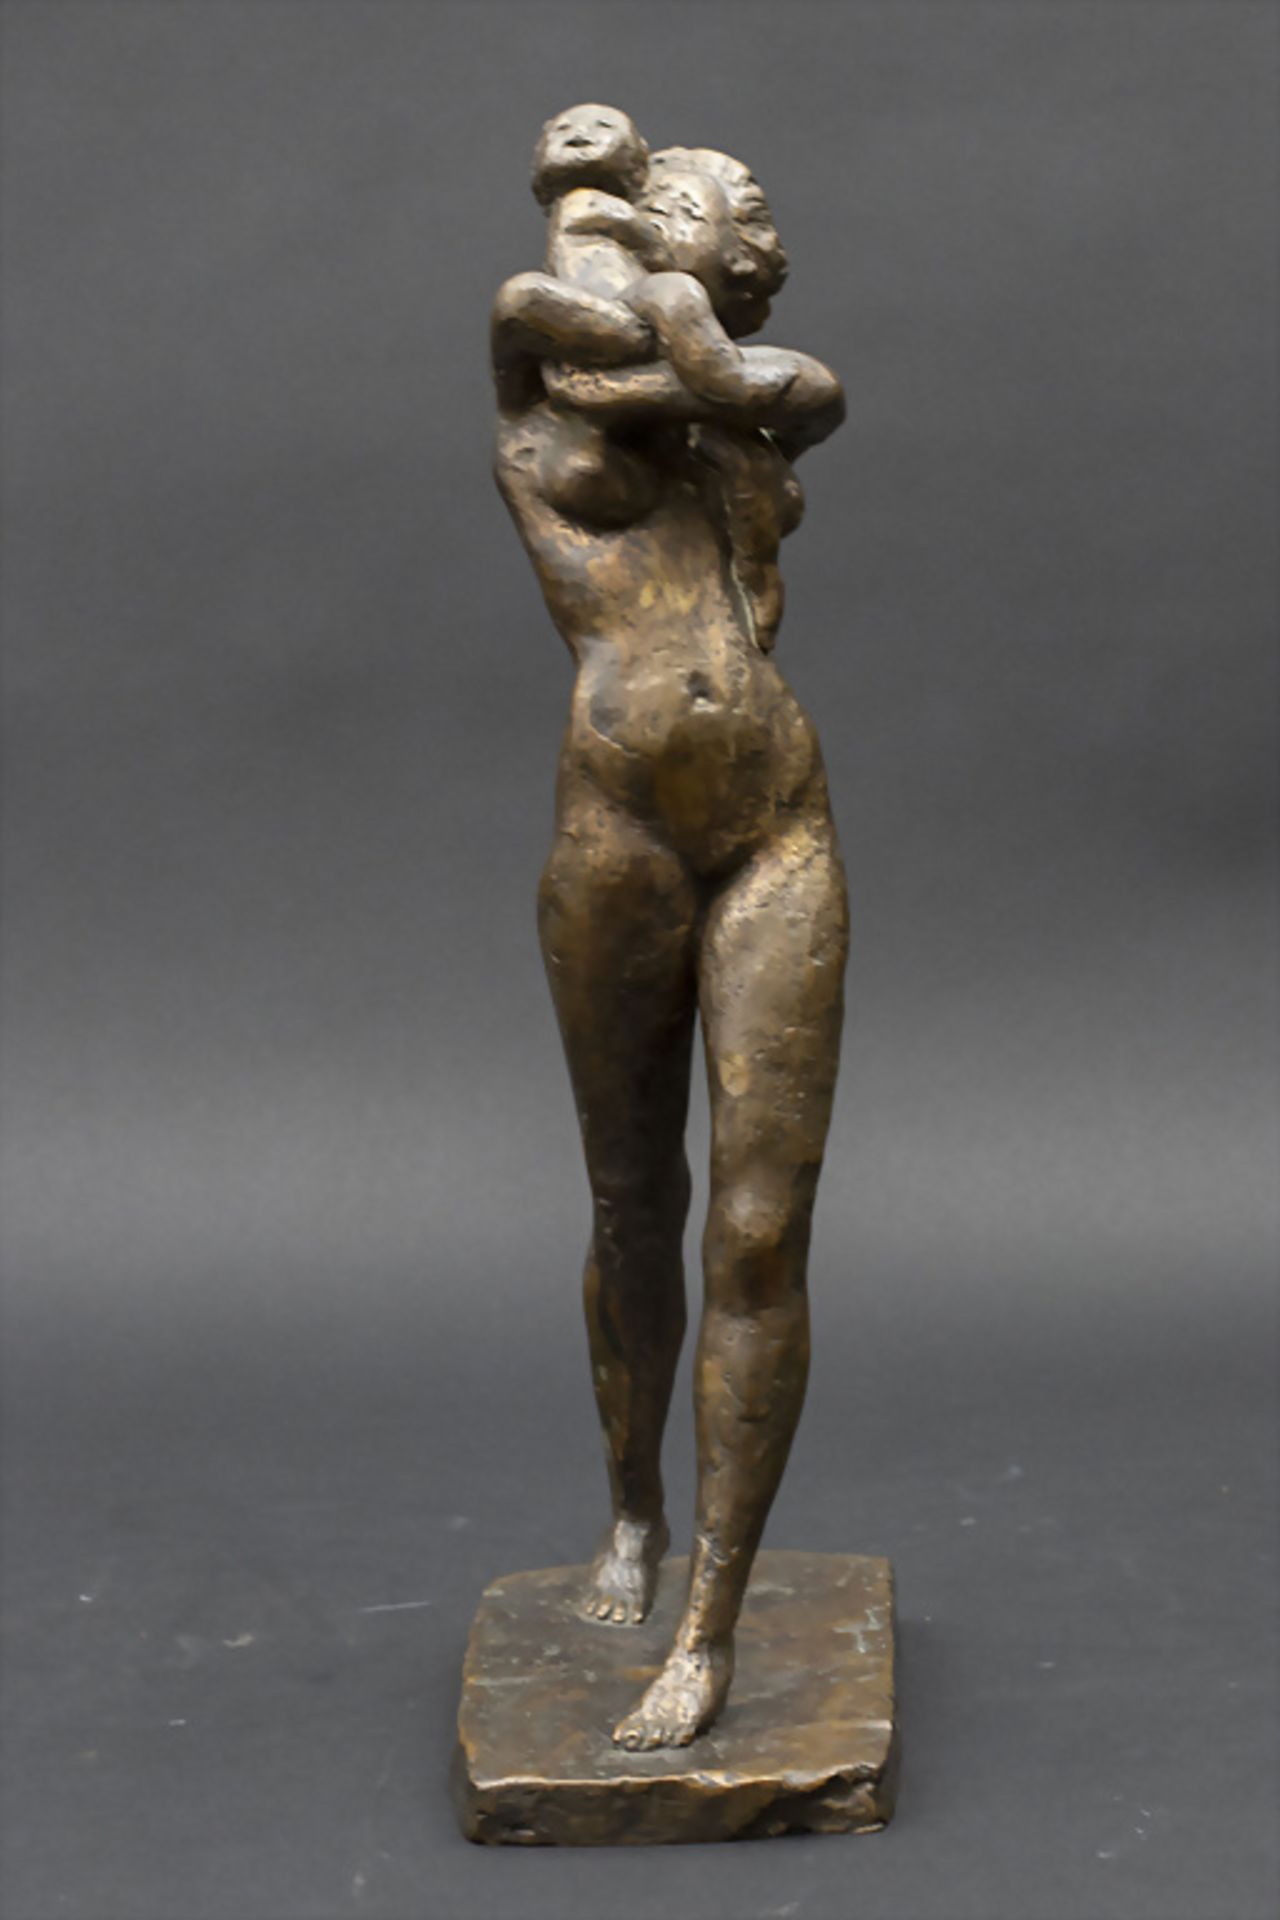 Bronzeplastik 'Mutterliebe' / A bronze sculpture 'Motherly love'